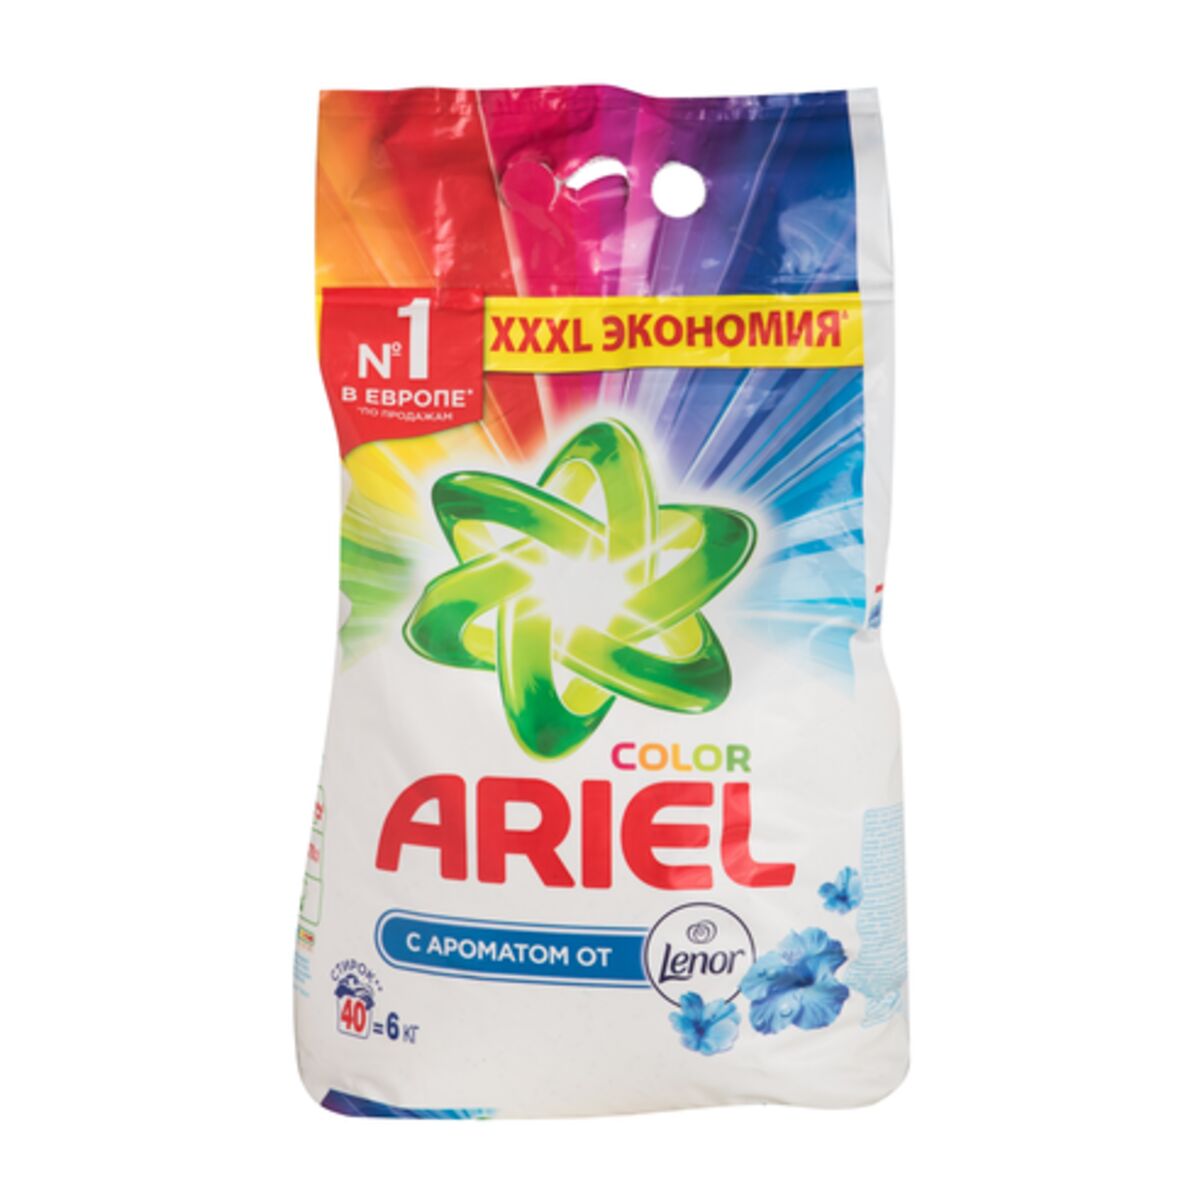 Стиральный порошок Ariel Automat Touch Of Lenor Fresh Color - рейтинг 4,74по отзывам экспертов ☑ Экспертиза состава и производителя